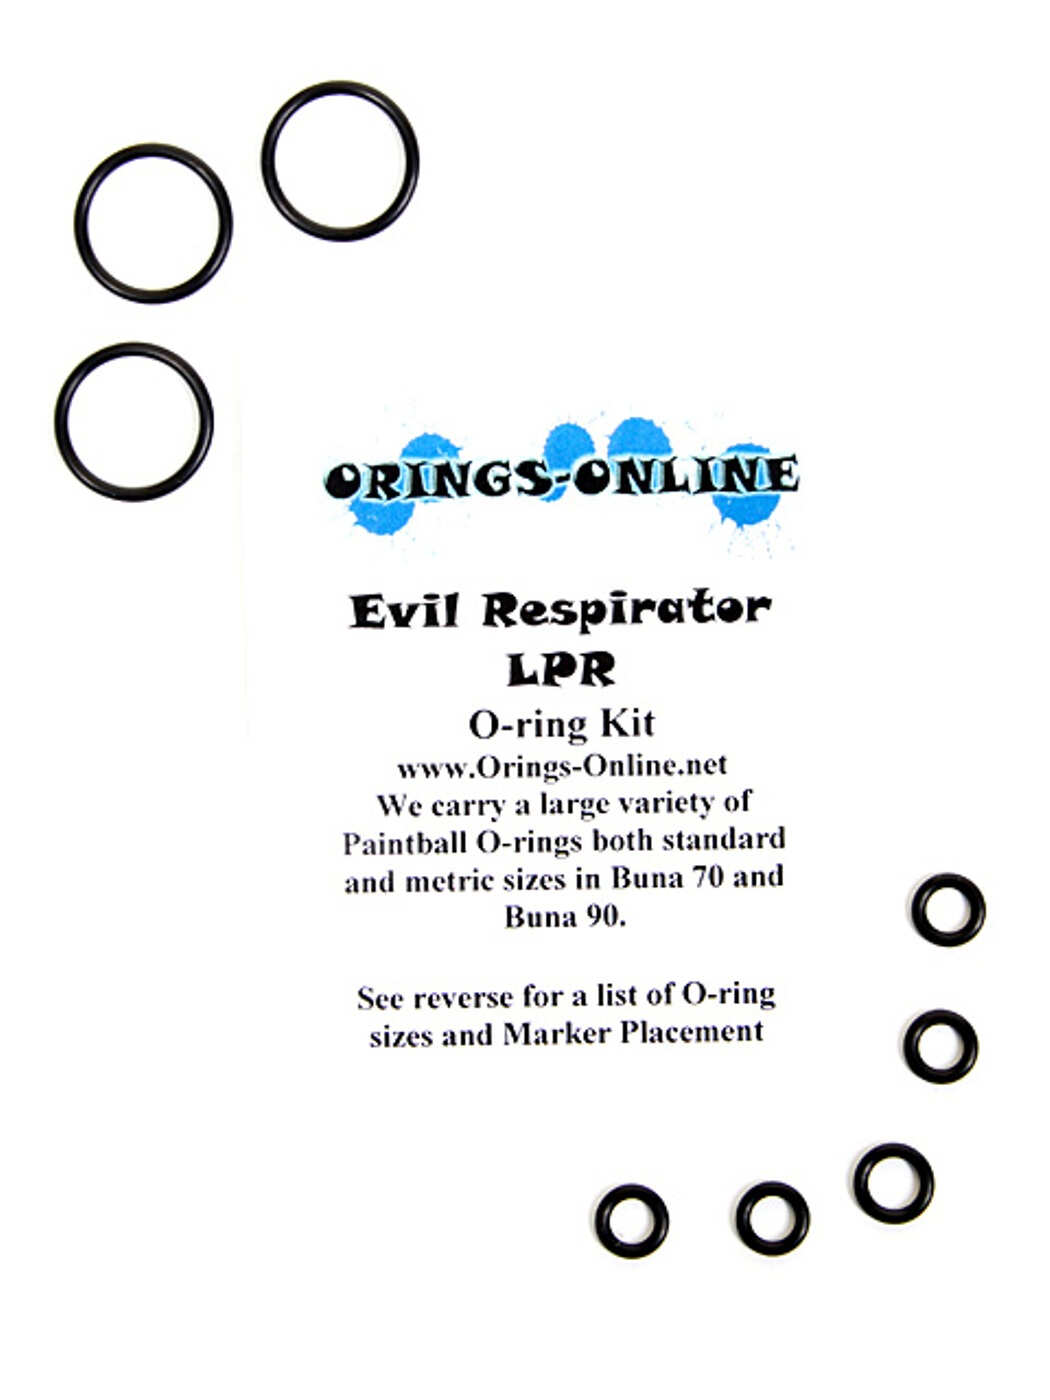 Evil Respirator LPR O-ring Kit